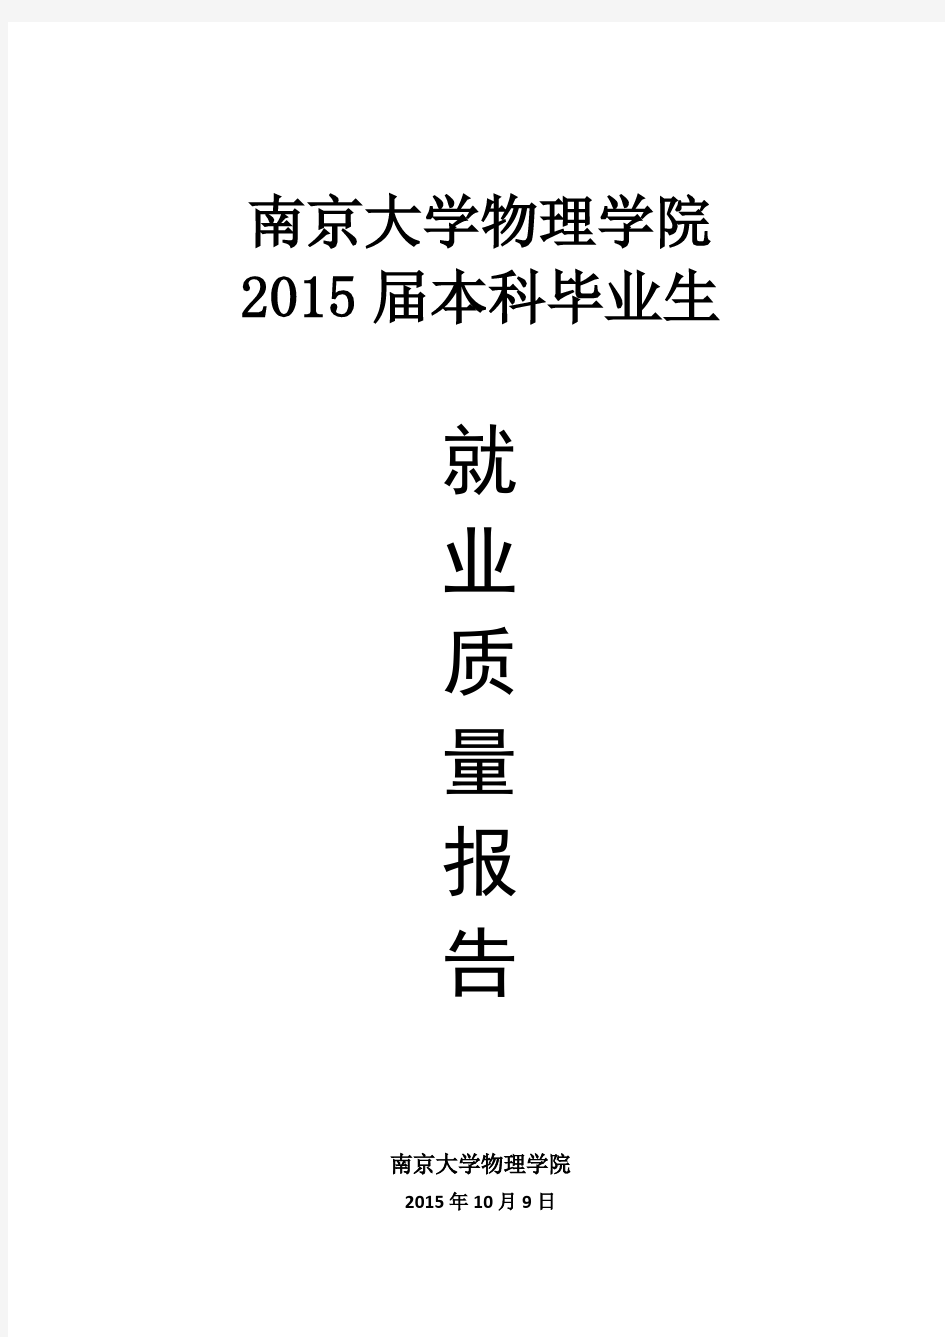 南京大学物理学院2015届本科毕业生就业质量报告